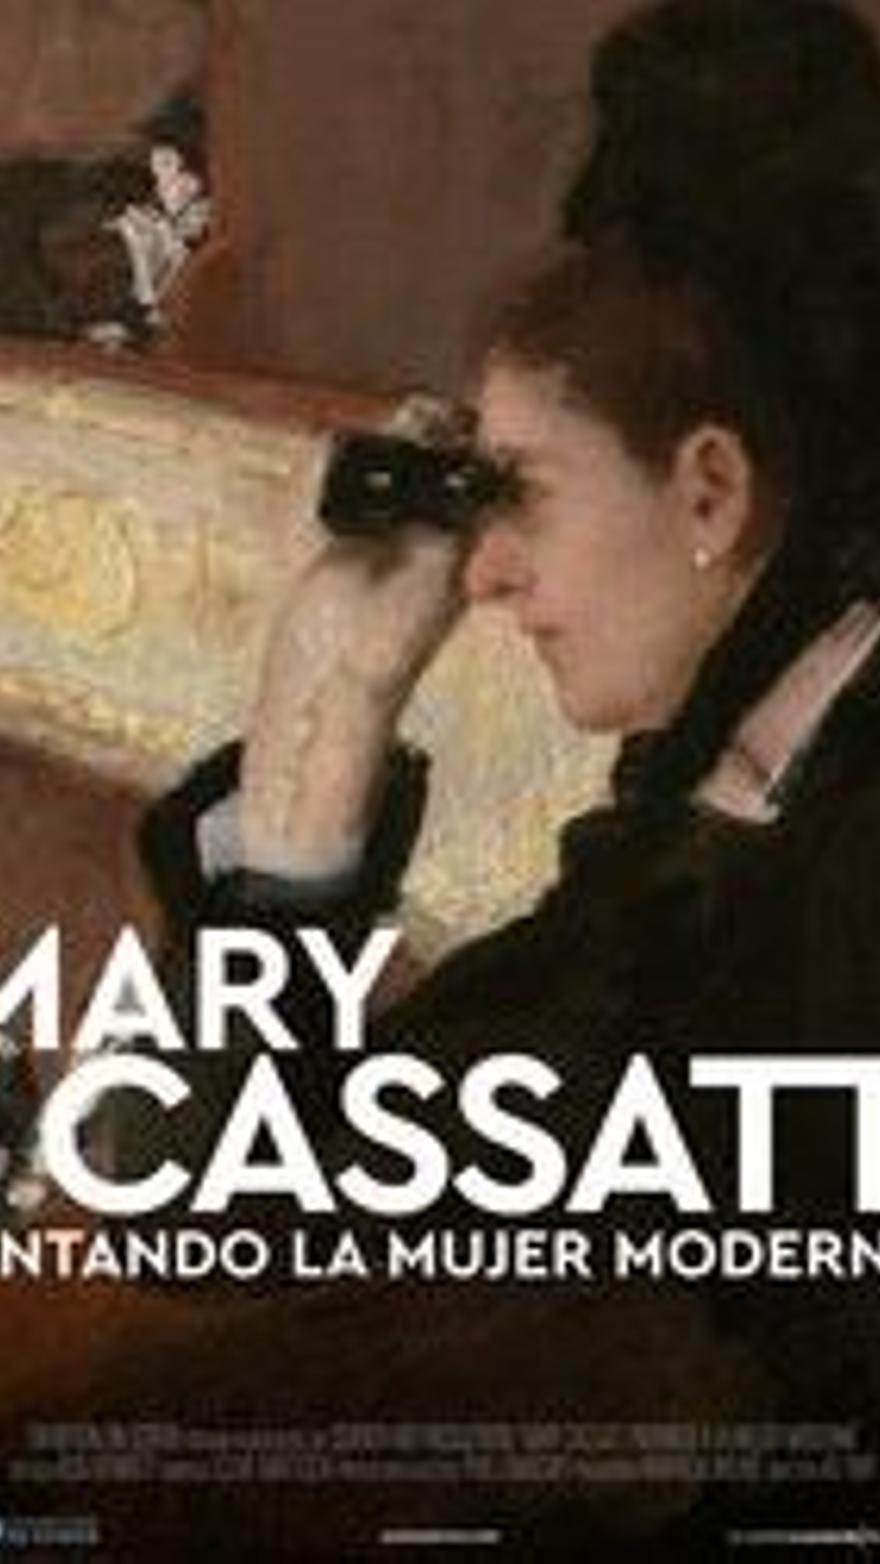 Mary Cassatt: Pintando la mujer moderna